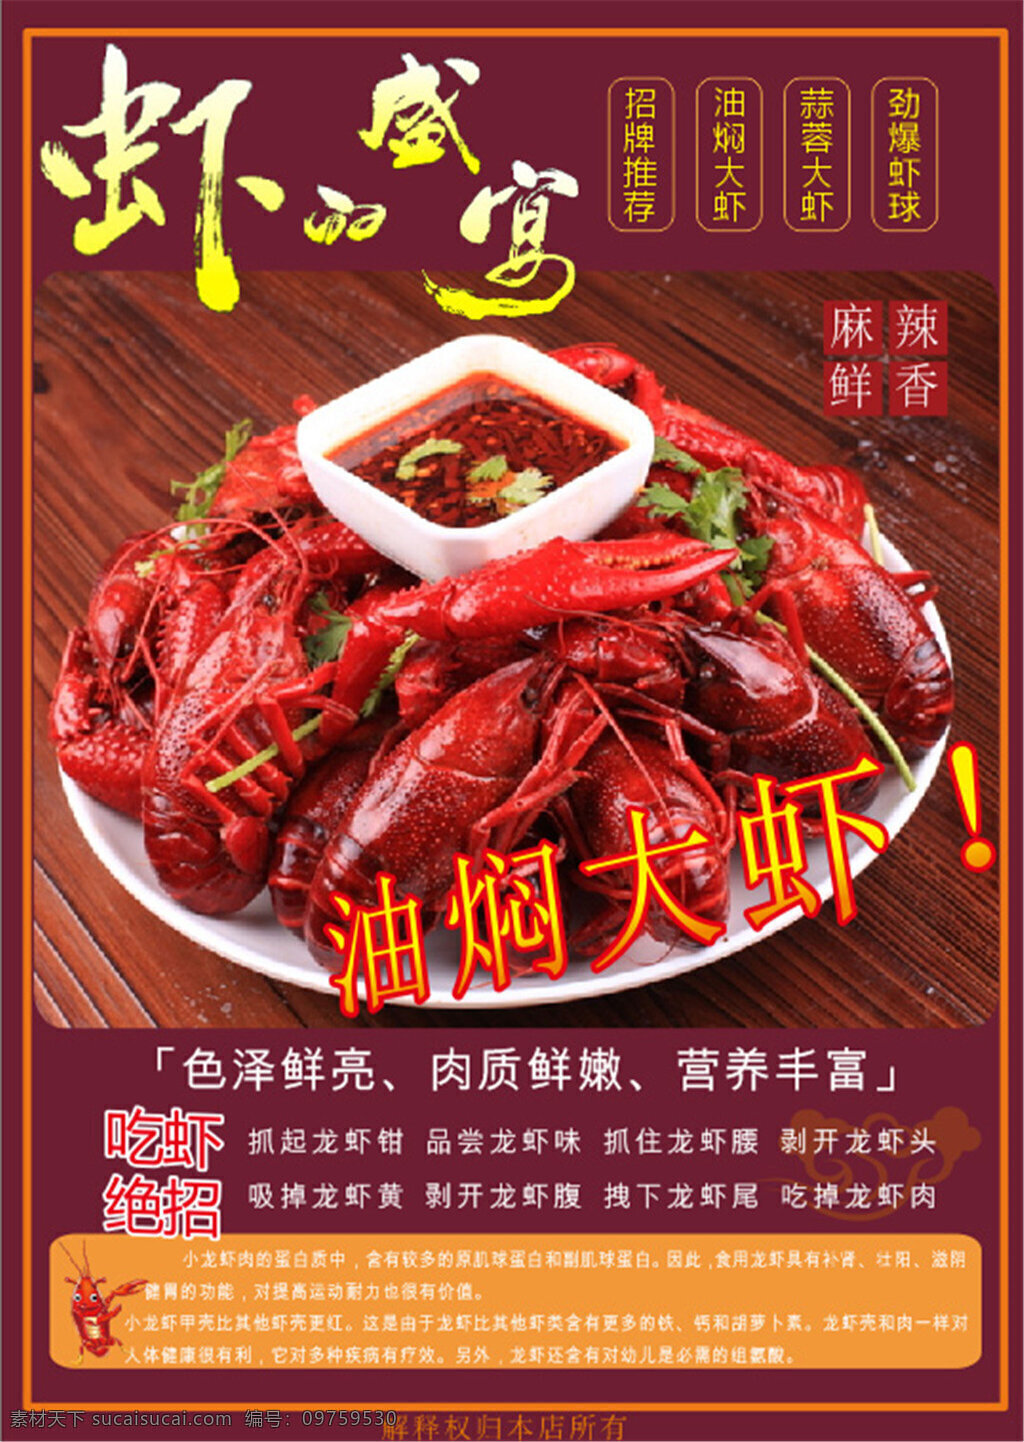 美味油焖大虾 美味 油焖 大虾 海鲜 盛宴 大闸蟹 红色